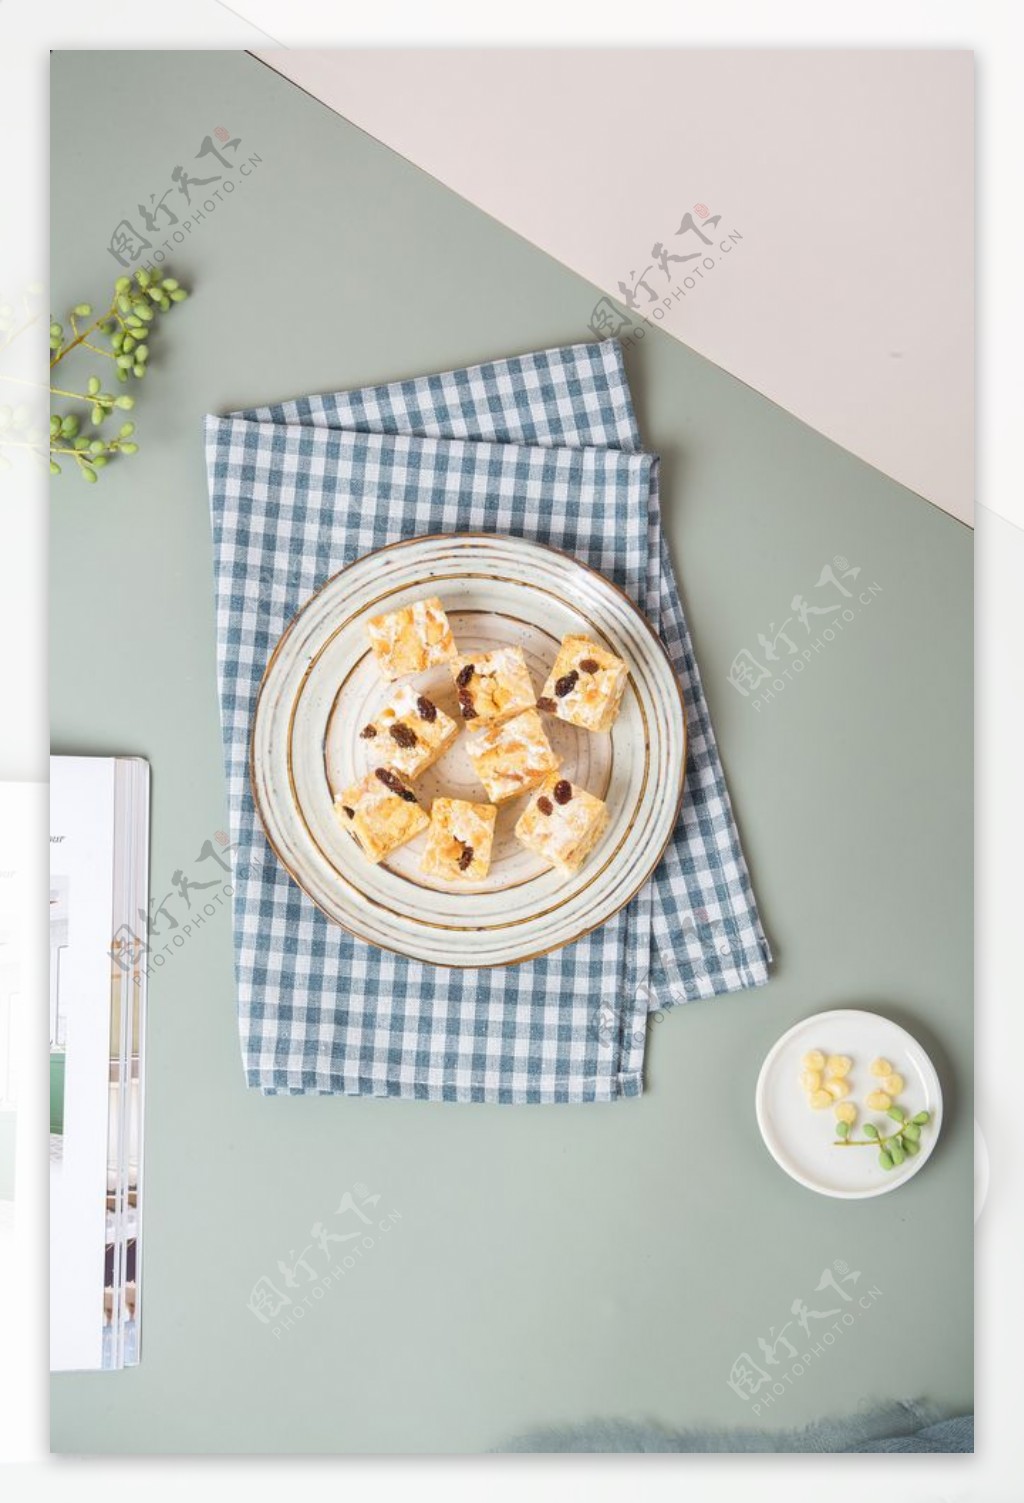 蓝莓酥零食食材背景海报素材图片